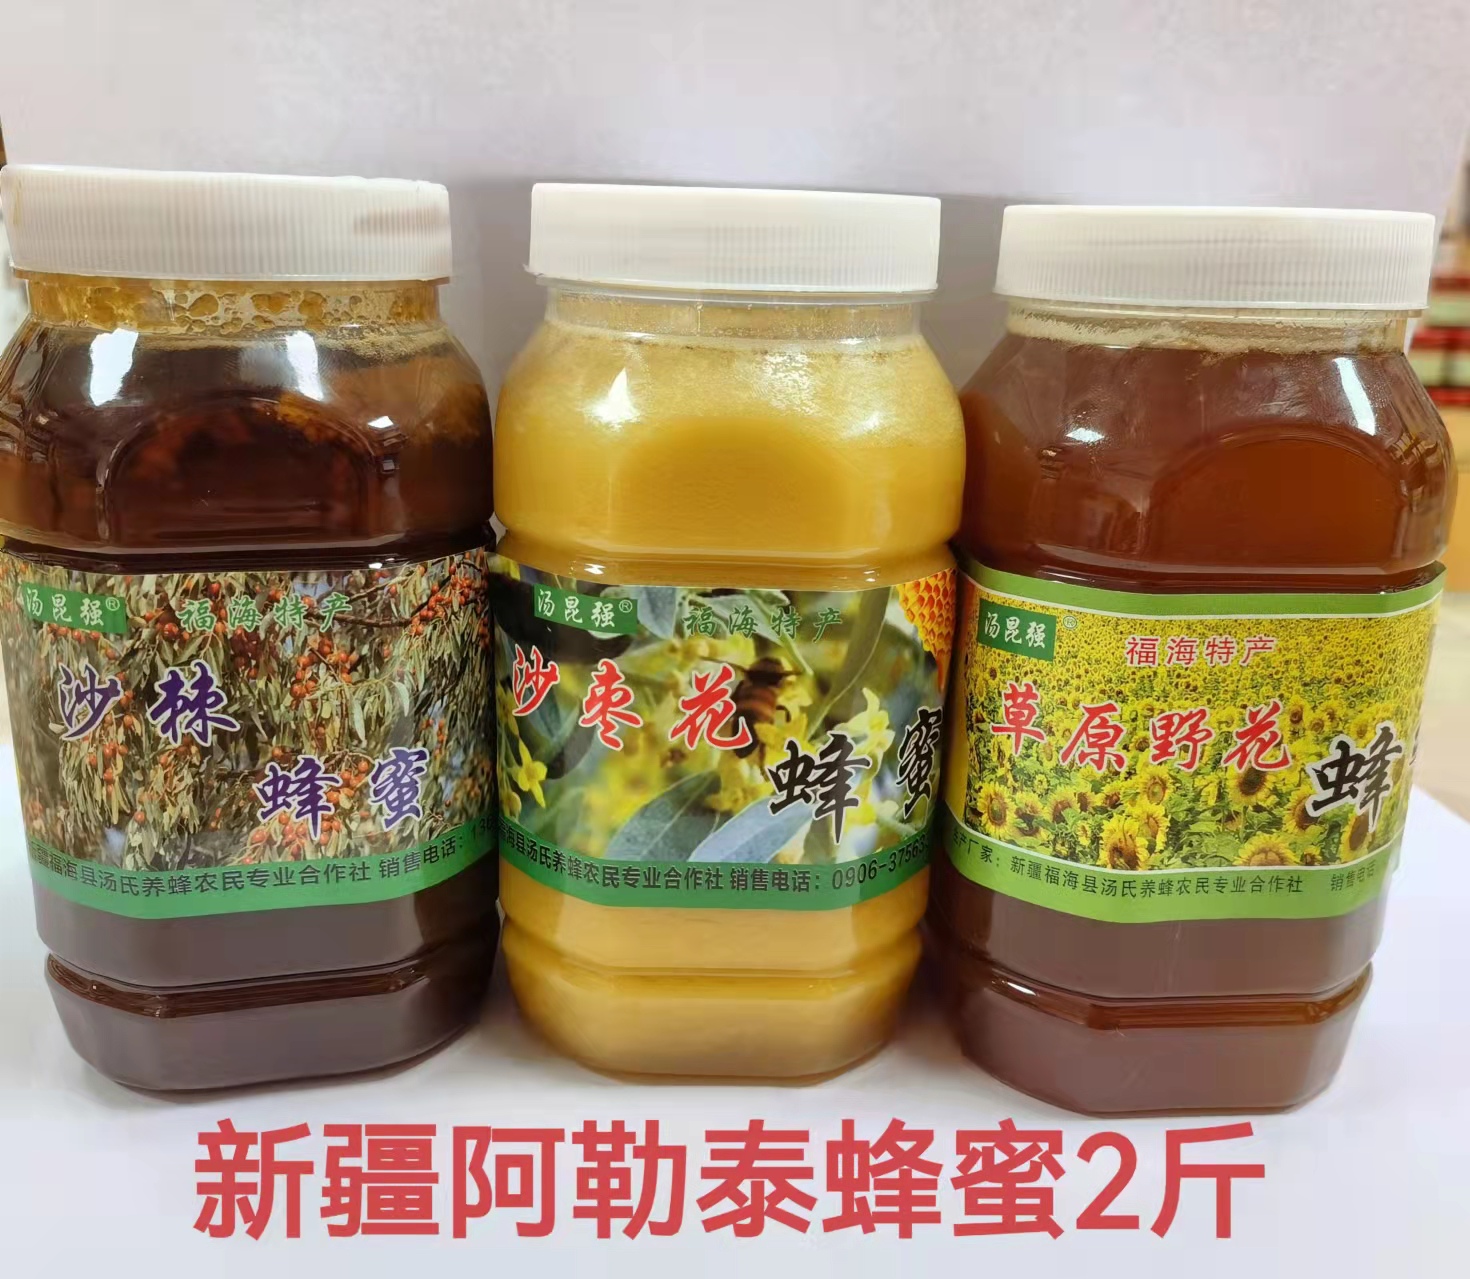 新疆阿勒泰蜂蜜2斤装 自养农家蜜蜂农直销 纯天然野花蜜 沙棘蜜